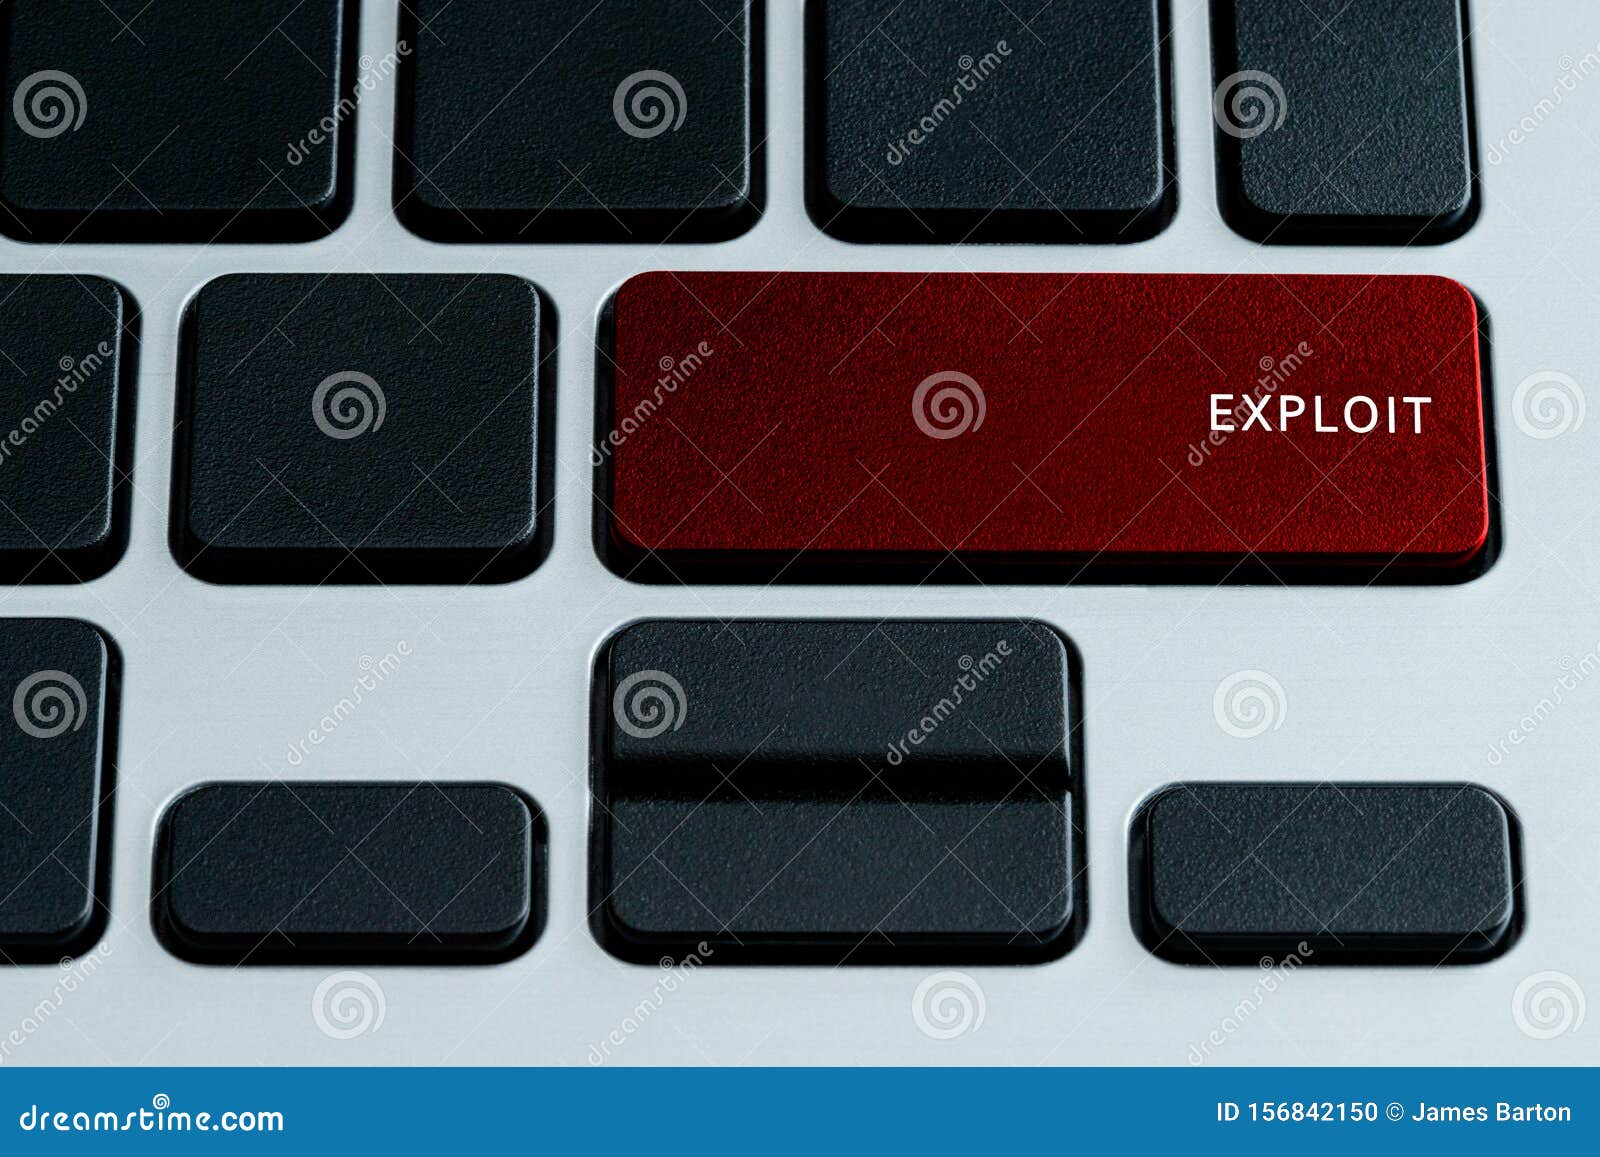 exploit on keyboard